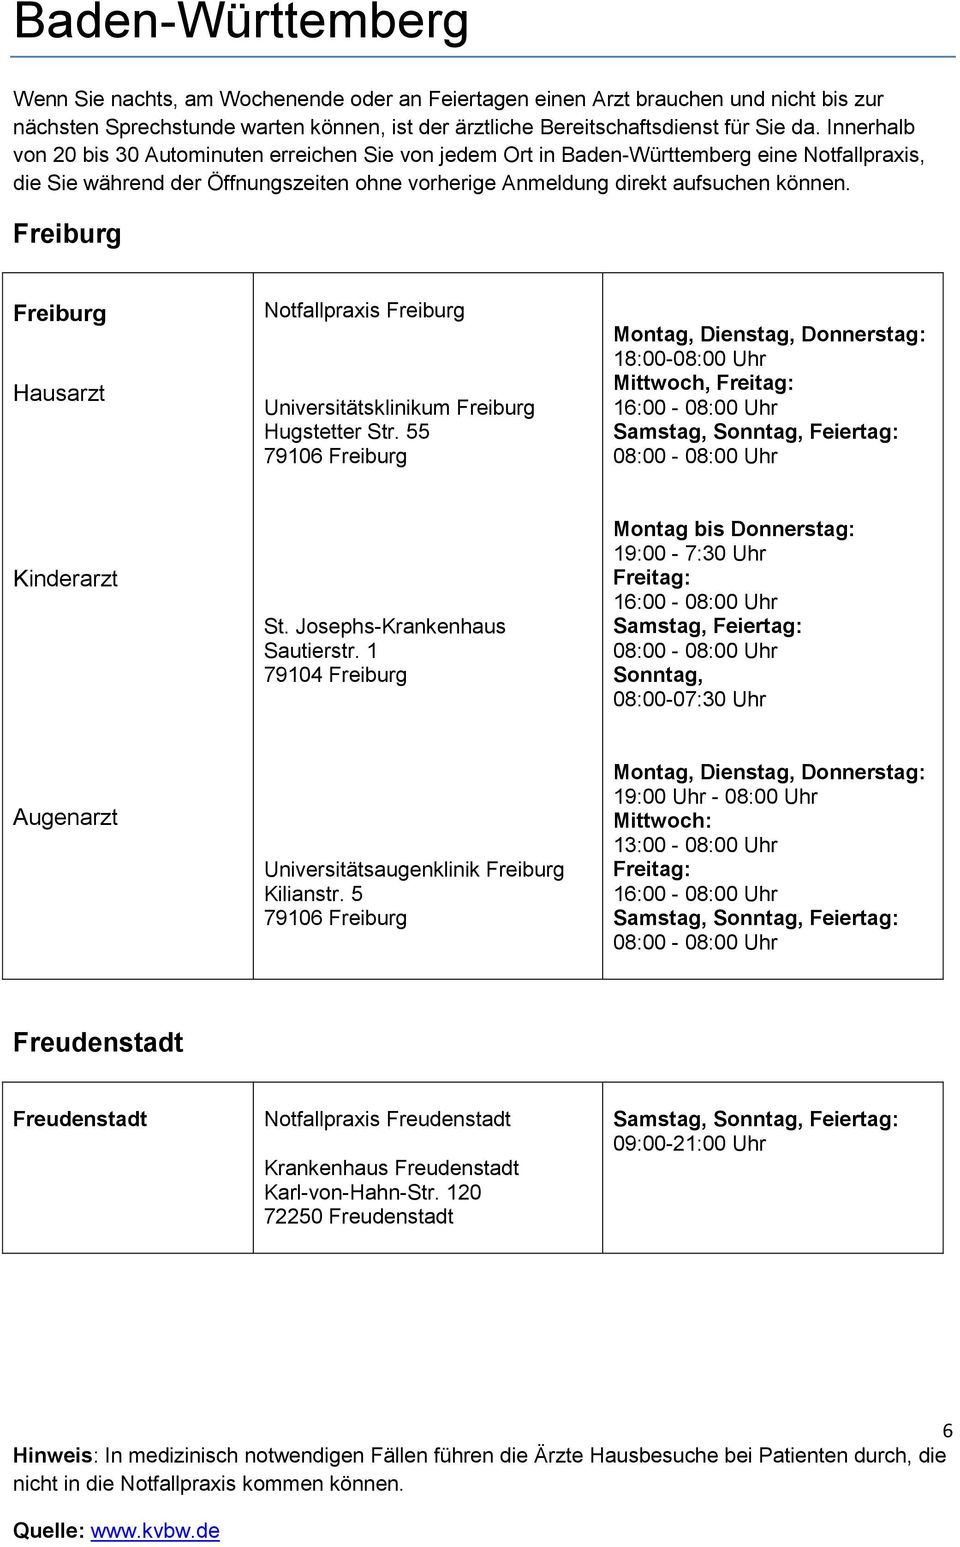 1 79104 Freiburg Montag bis Donnerstag: 19:00-7:30 Uhr 16:00-08:00 Uhr Samstag, Feiertag: 08:00-08:00 Uhr Sonntag, 08:00-07:30 Uhr Augenarzt